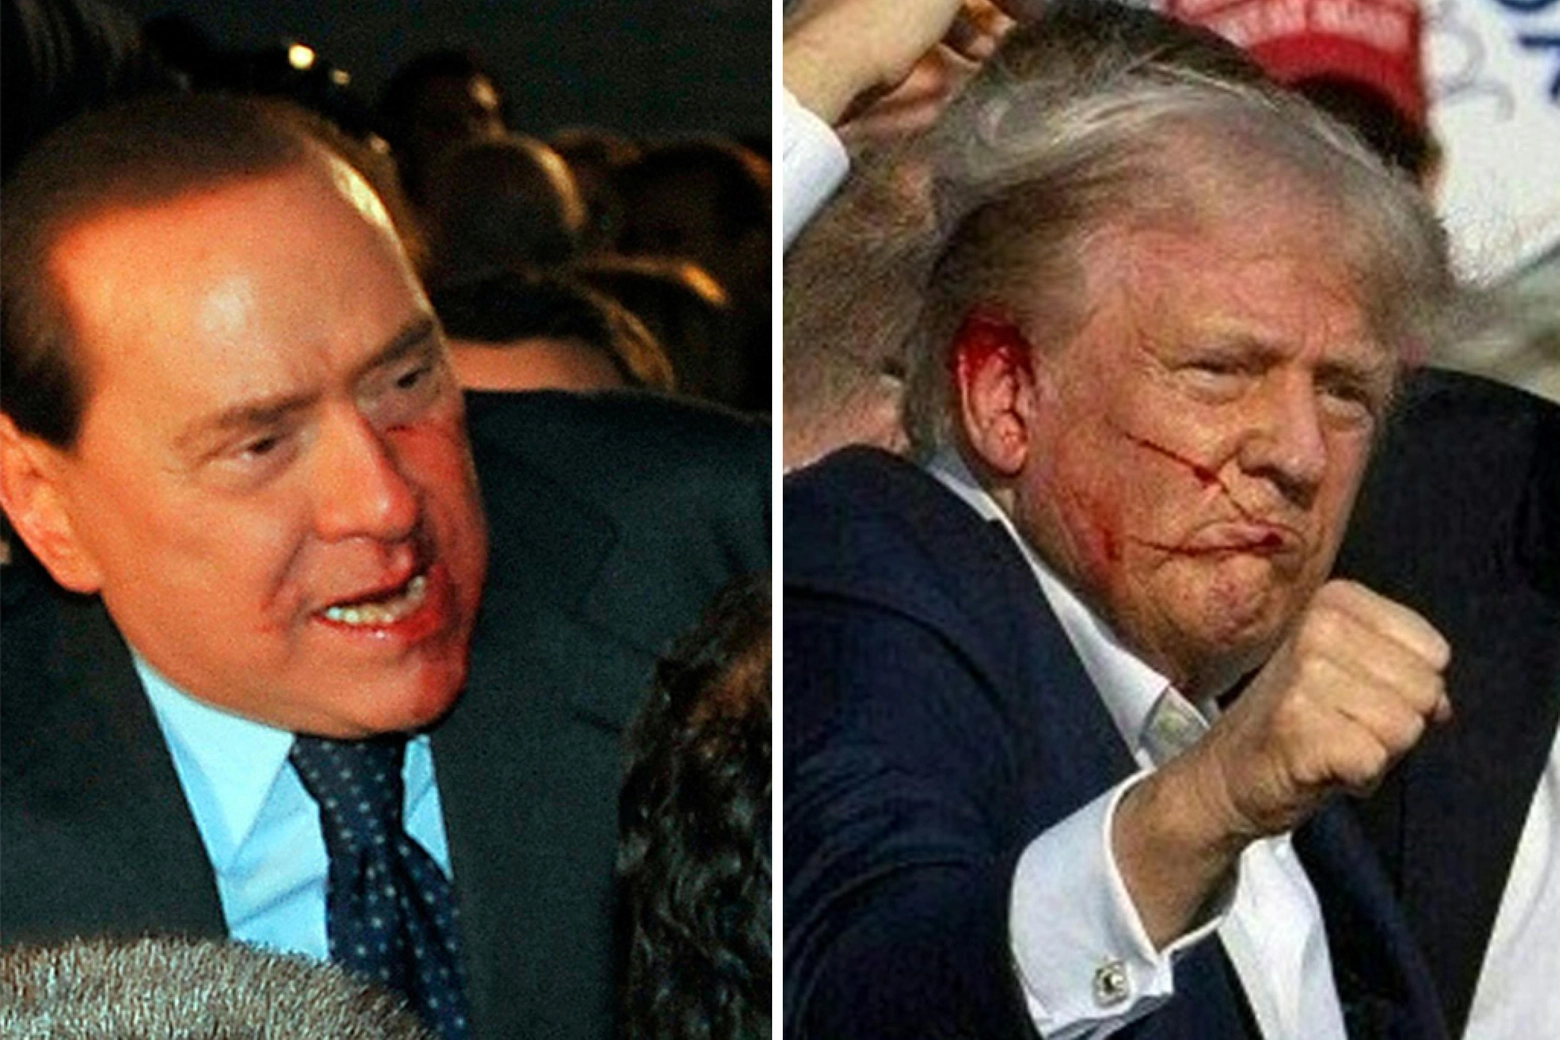 Silvio Berlusconi, colpito al volto con una statuetta nel 2009, e Donald Trump ferito all'orecchio durante un comizio